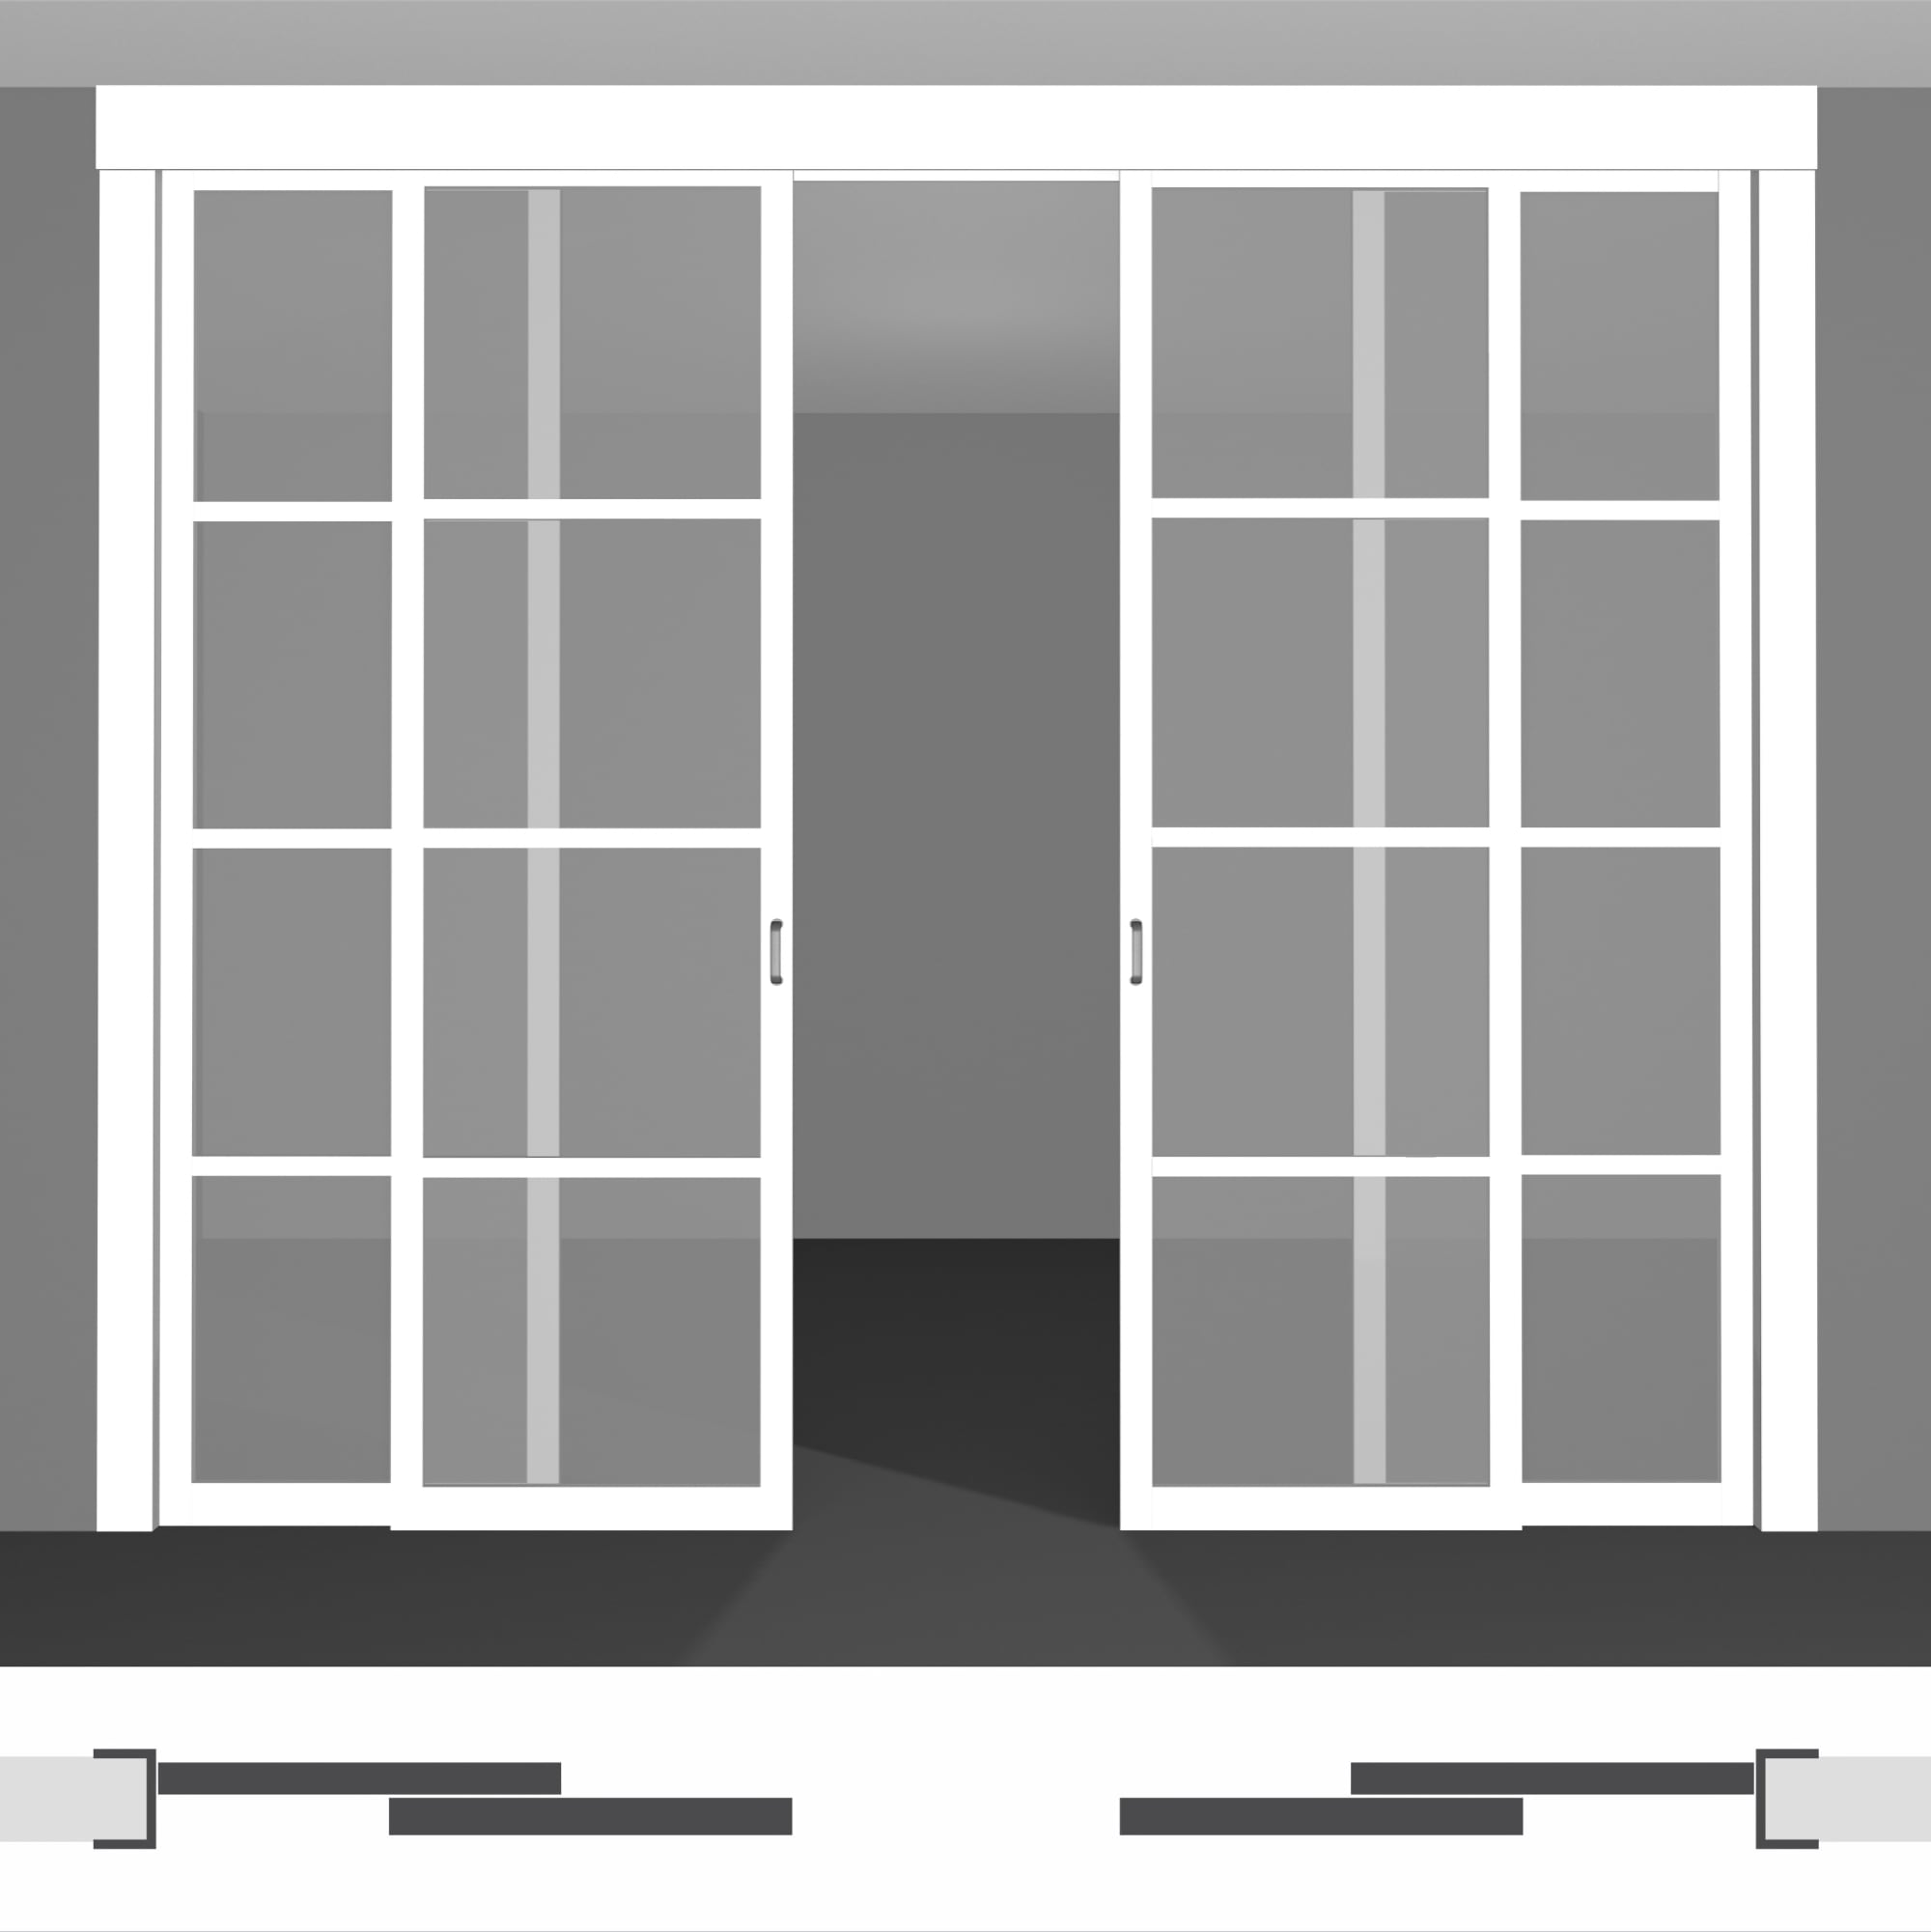 Міжкімнатні роздвижні двері - P02.3dvs подвійний комплект під стелю • установка всередині отвору